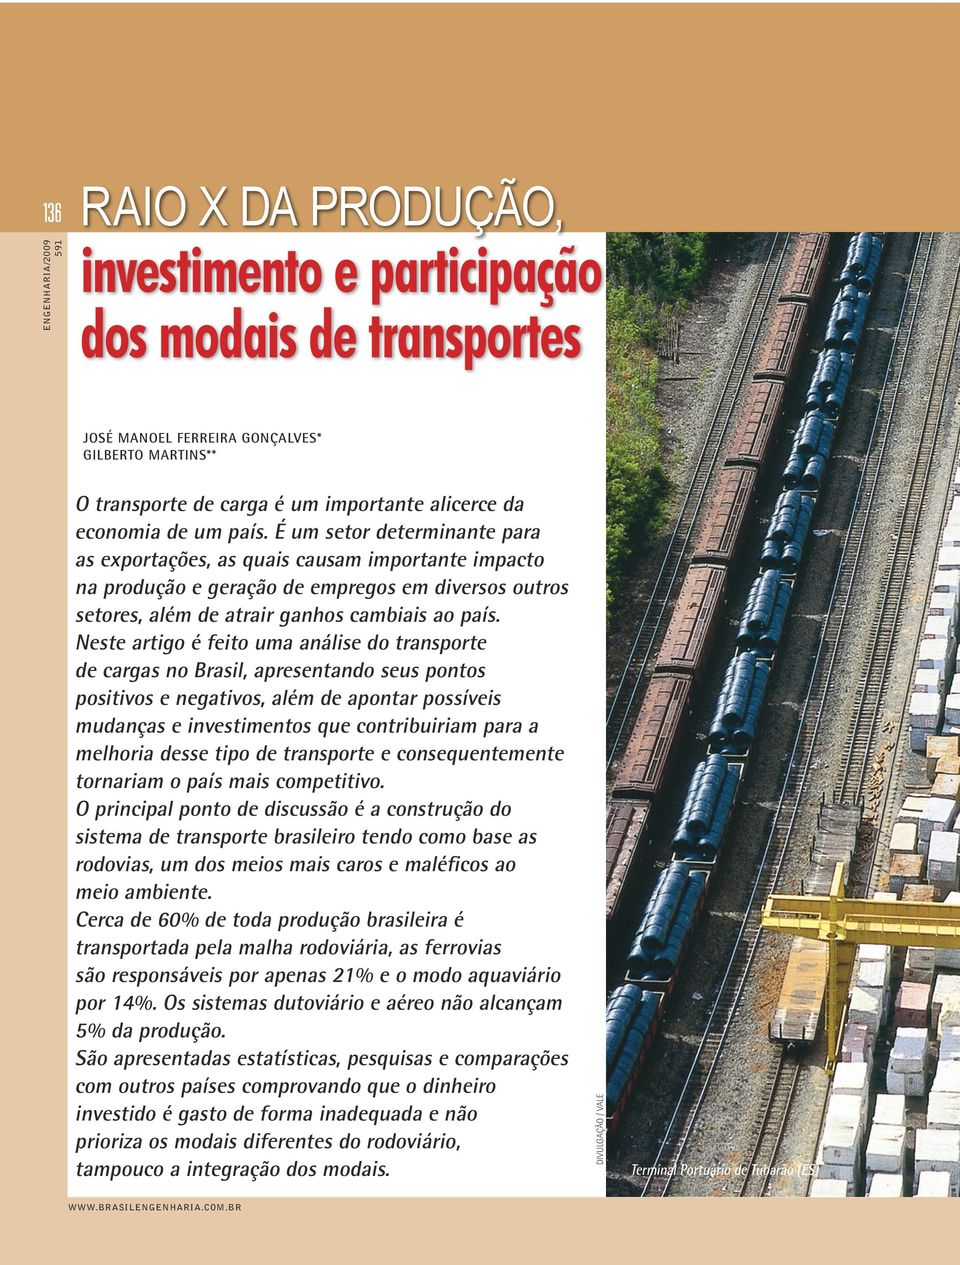 Neste artigo é feito uma análise do transporte de cargas no Brasil, apresentando seus pontos positivos e negativos, além de apontar possíveis mudanças e investimentos que contribuiriam para a